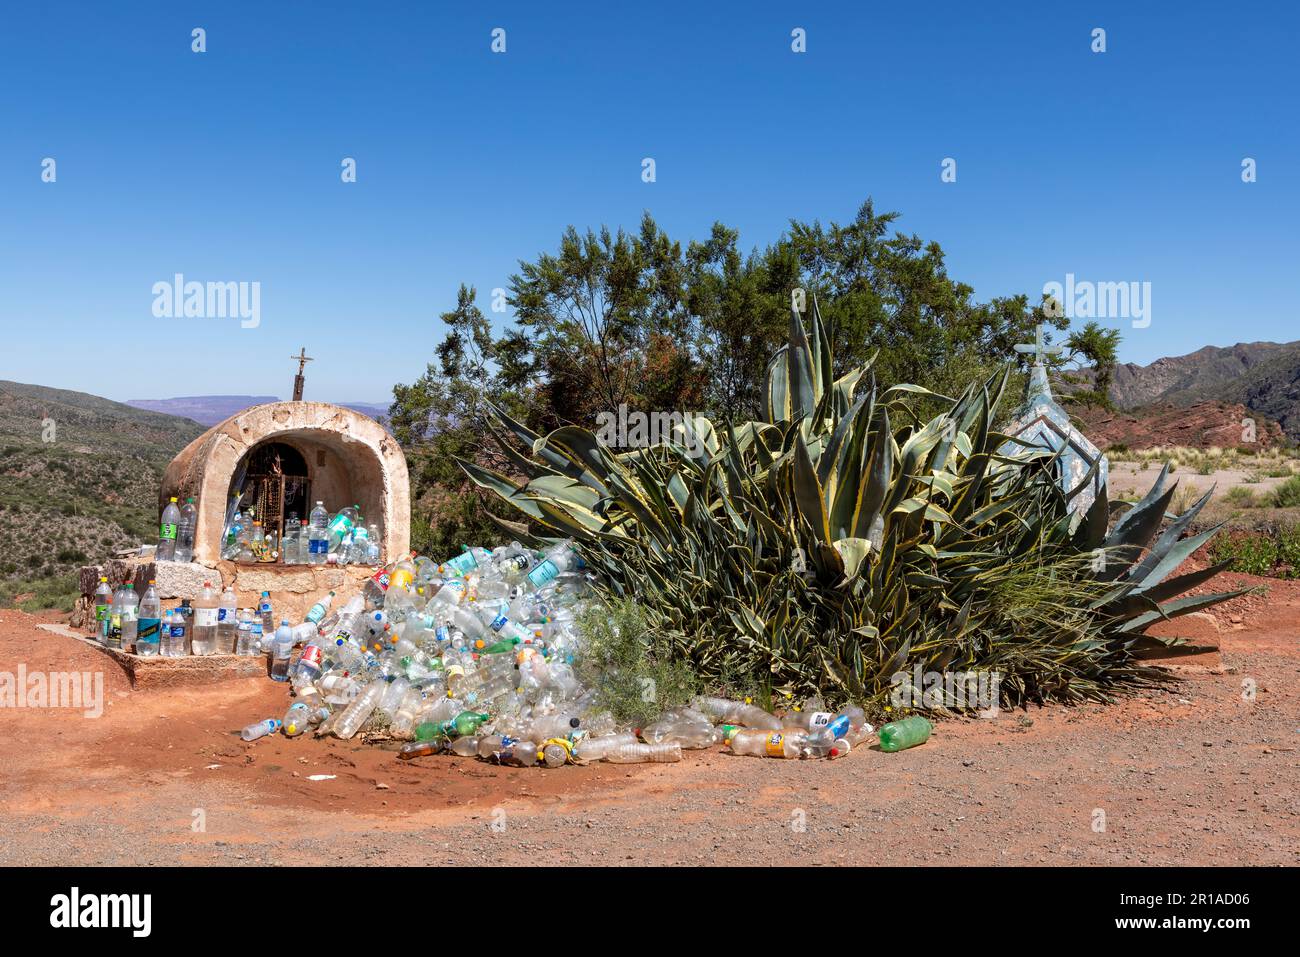 Altare sacrificale con bottiglie riempite d'acqua come offerta sacrificale a dio nella regione estremamente secca la Rioja in Argentina, Sud America Foto Stock